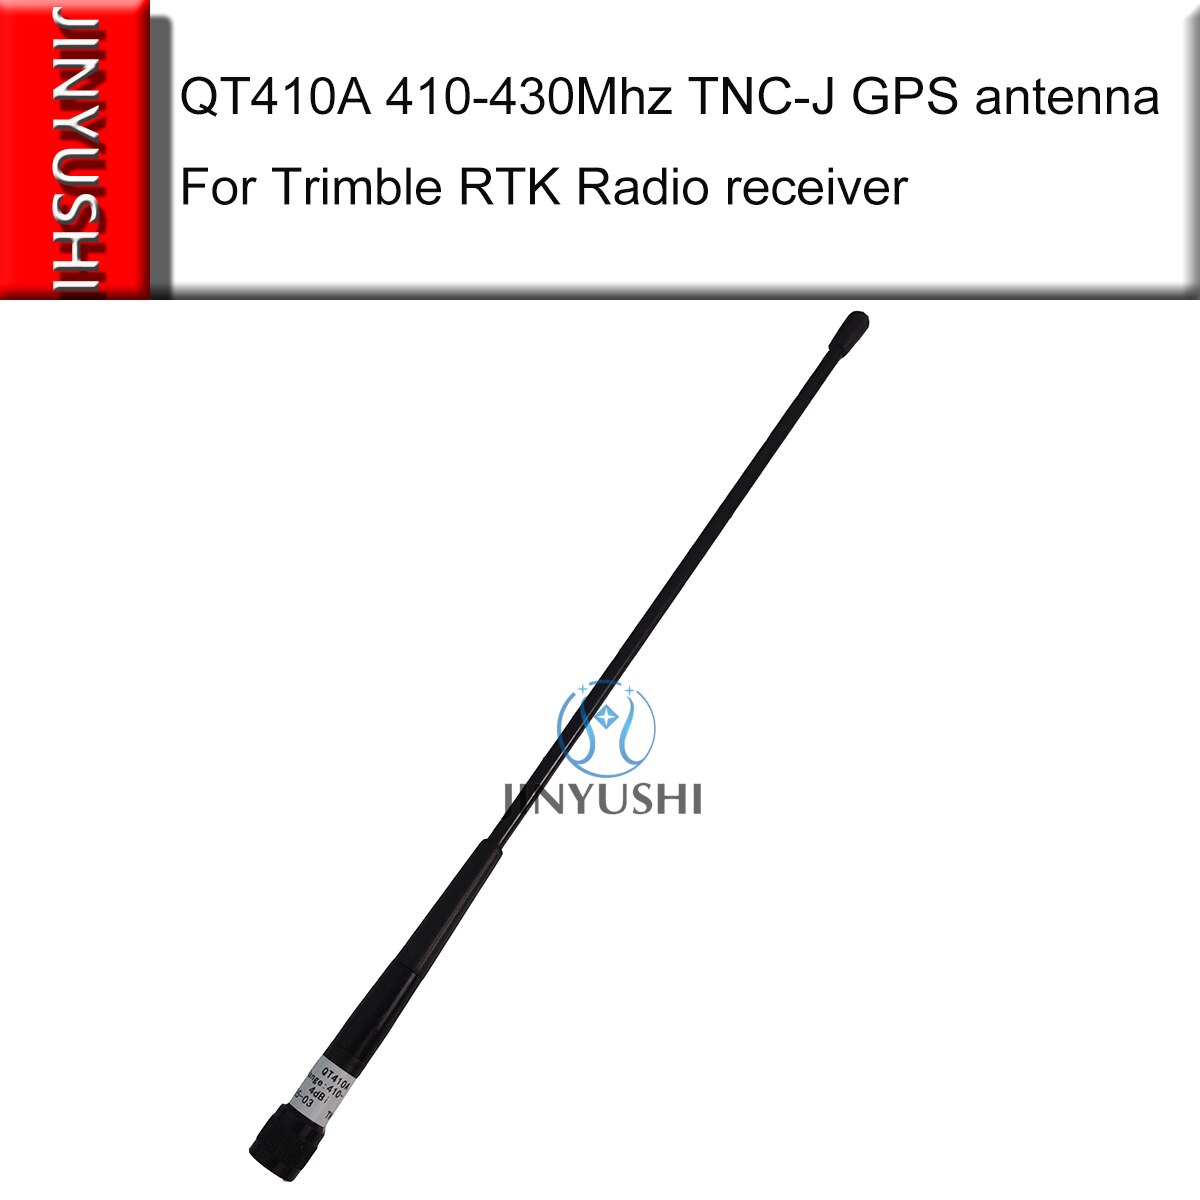 Gps TNC-J Zender Landmeetkundige Antenne 31 Cm 410-430Mhz QT410A 4dBi Schroef Antenne Voor Trimble Rtk Radio Ontvanger